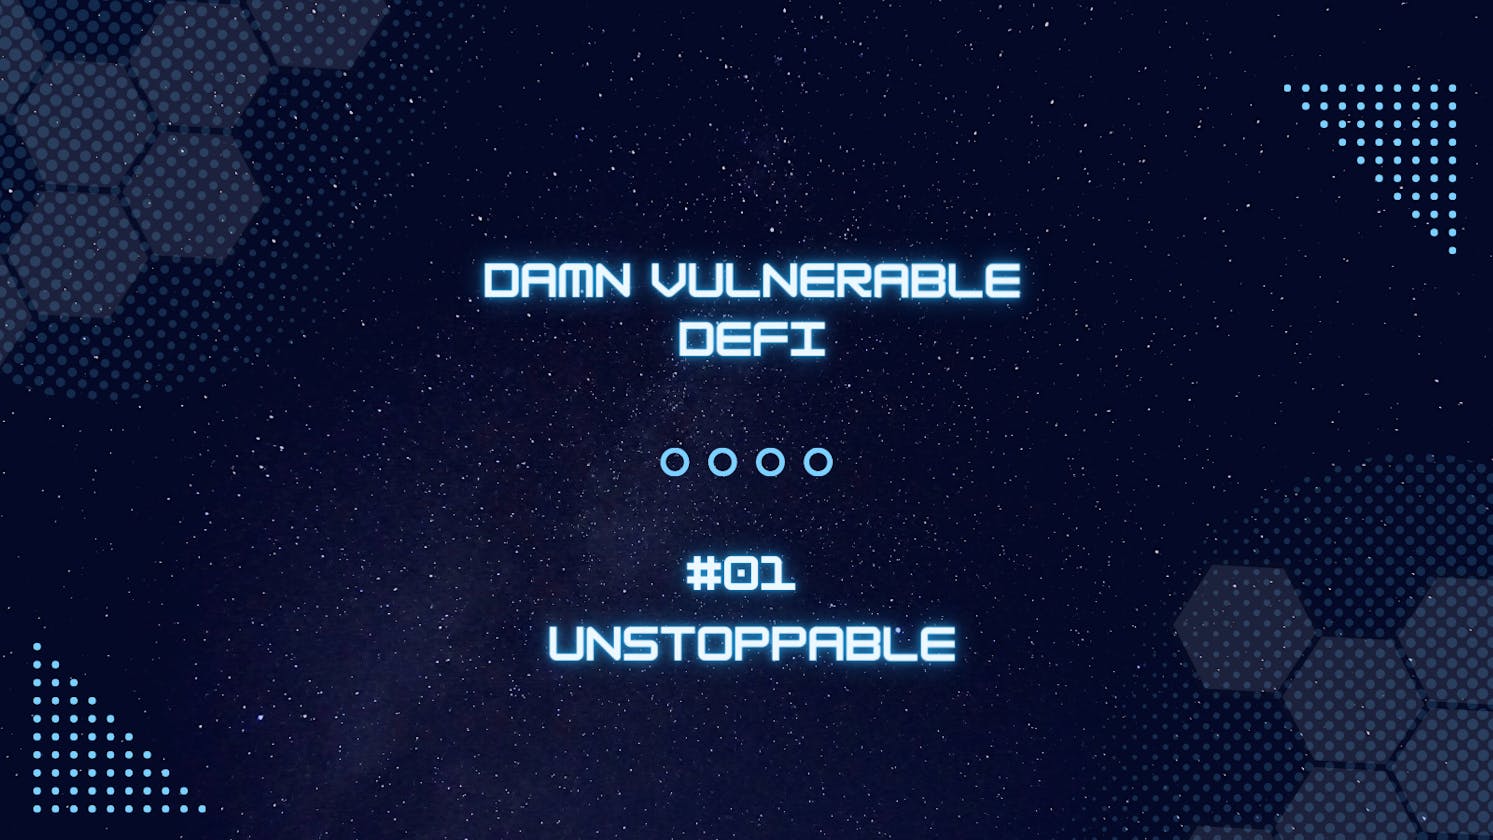 Unstoppable - Damn Vulnerable DeFi #01